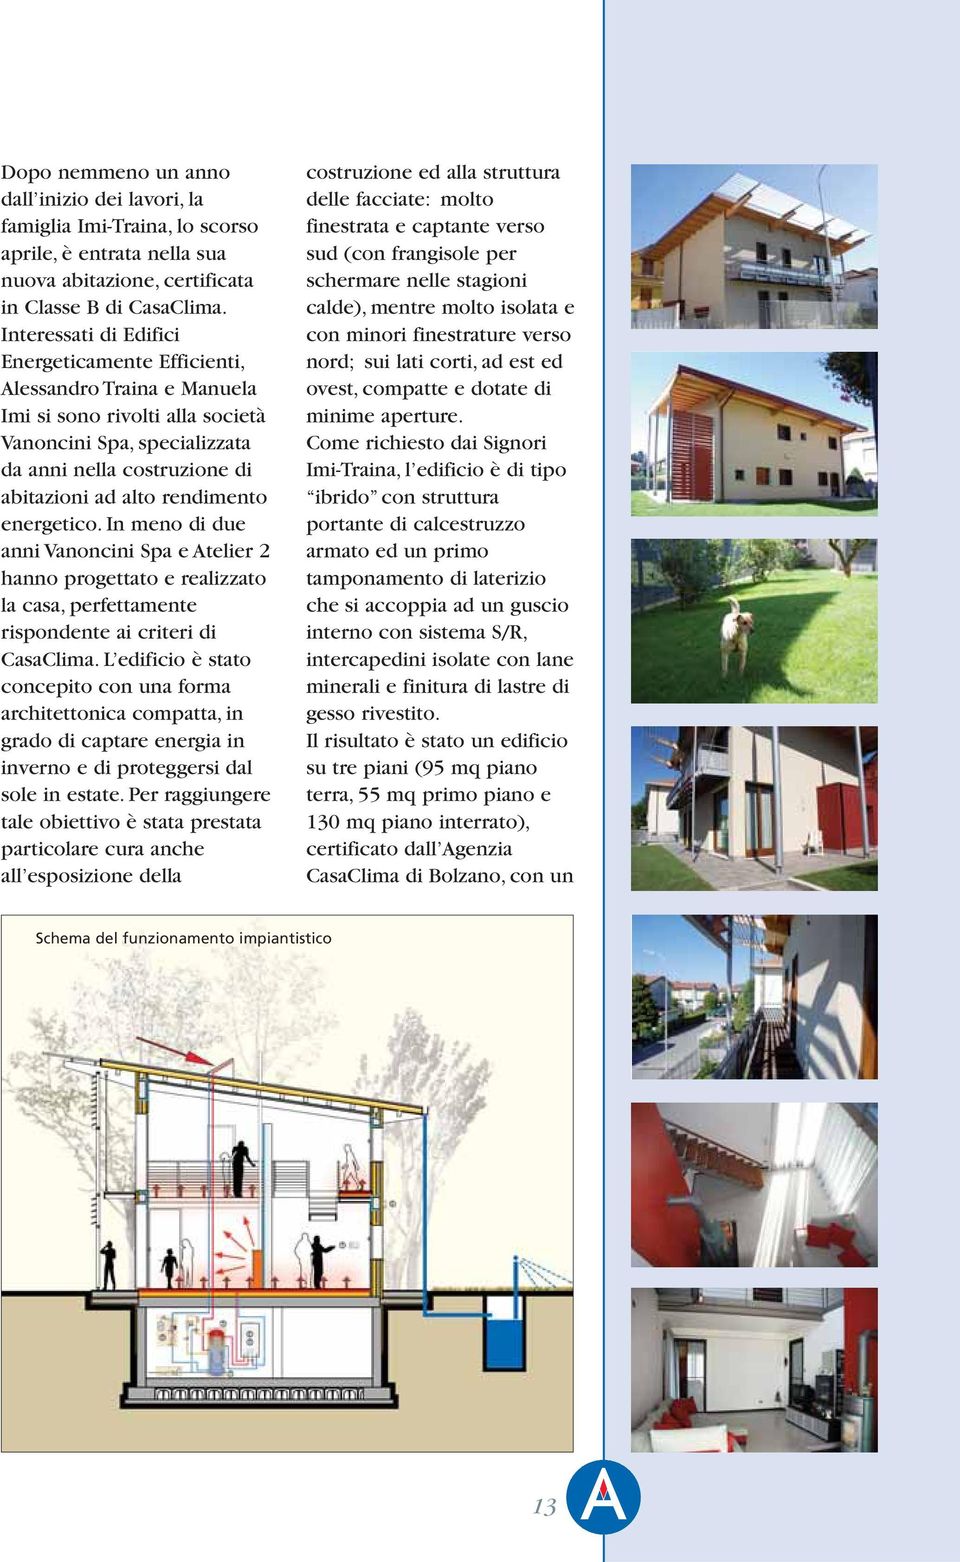 energetico. In meno di due anni Vanoncini Spa e Atelier 2 hanno progettato e realizzato la casa, perfettamente rispondente ai criteri di CasaClima.